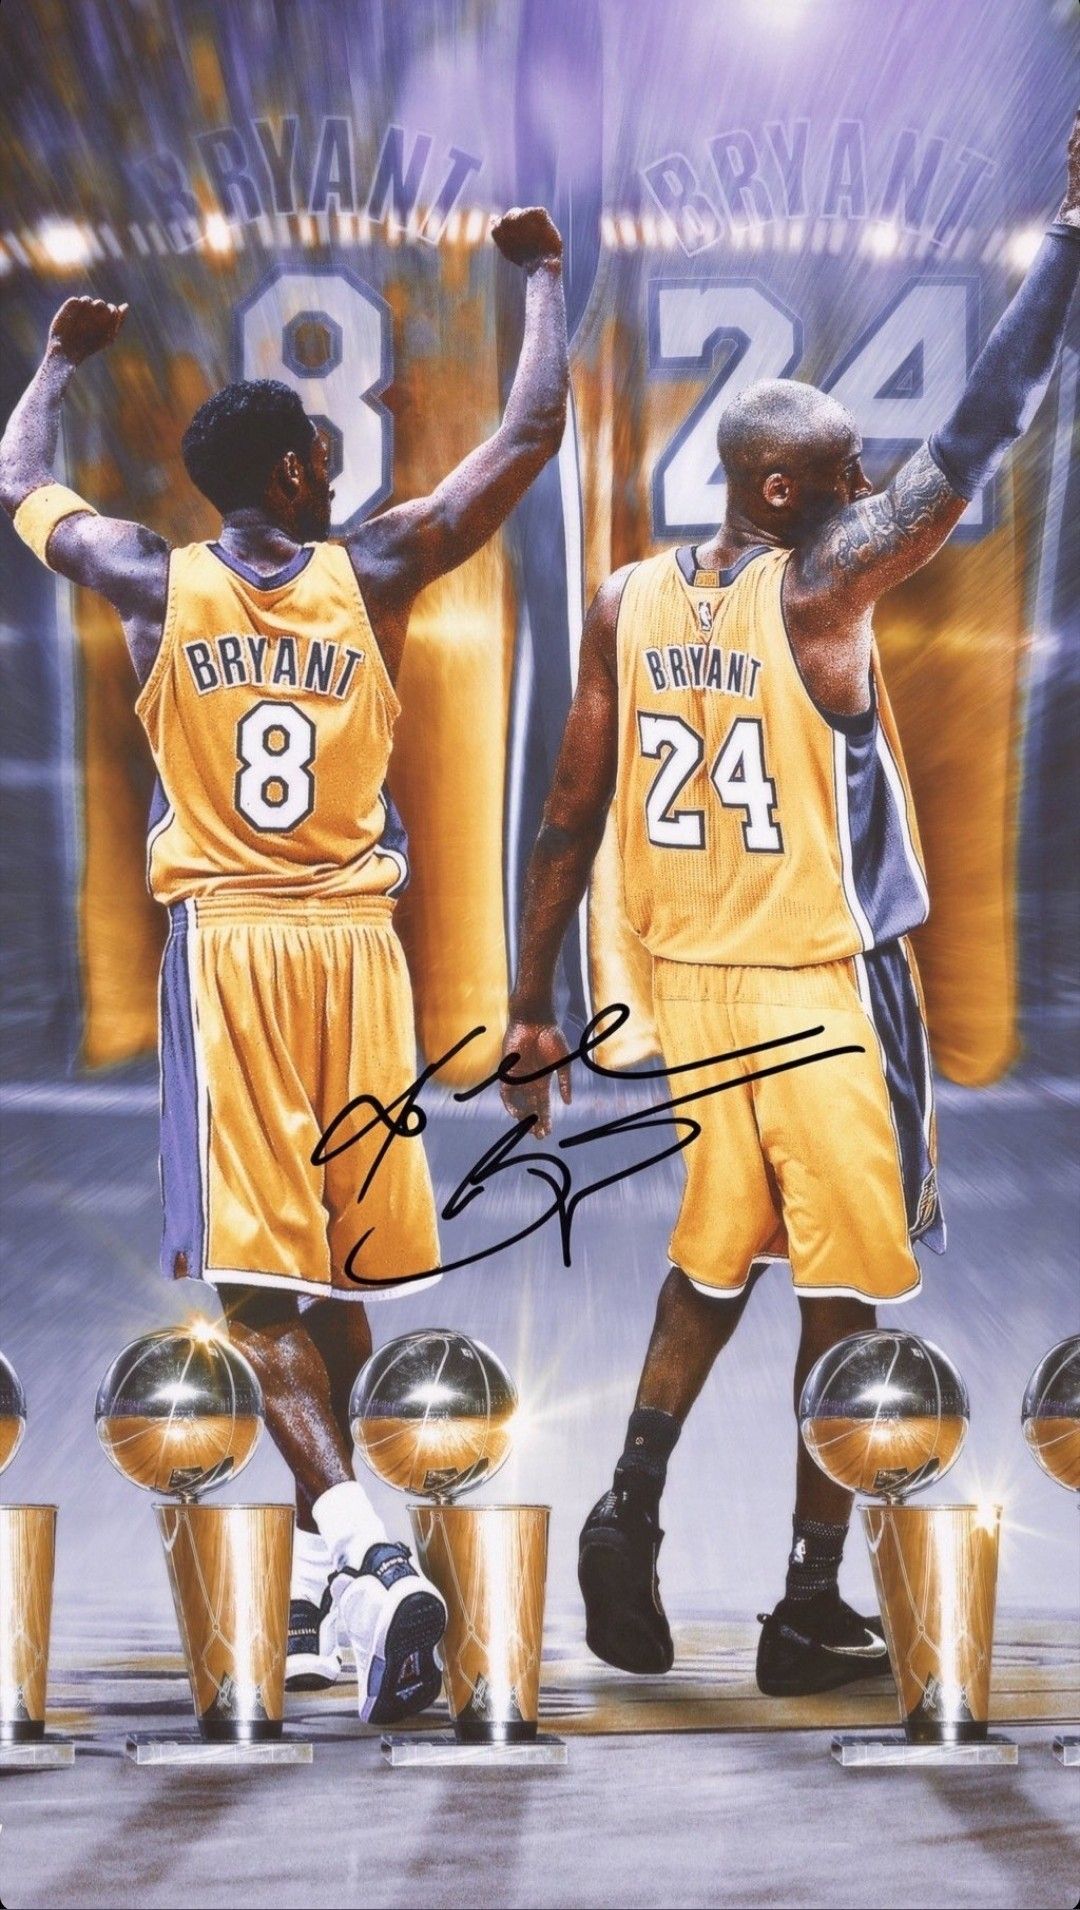 Kobe Bryant wallpaper. Kobe bryant wallpaper, Kobe bryant